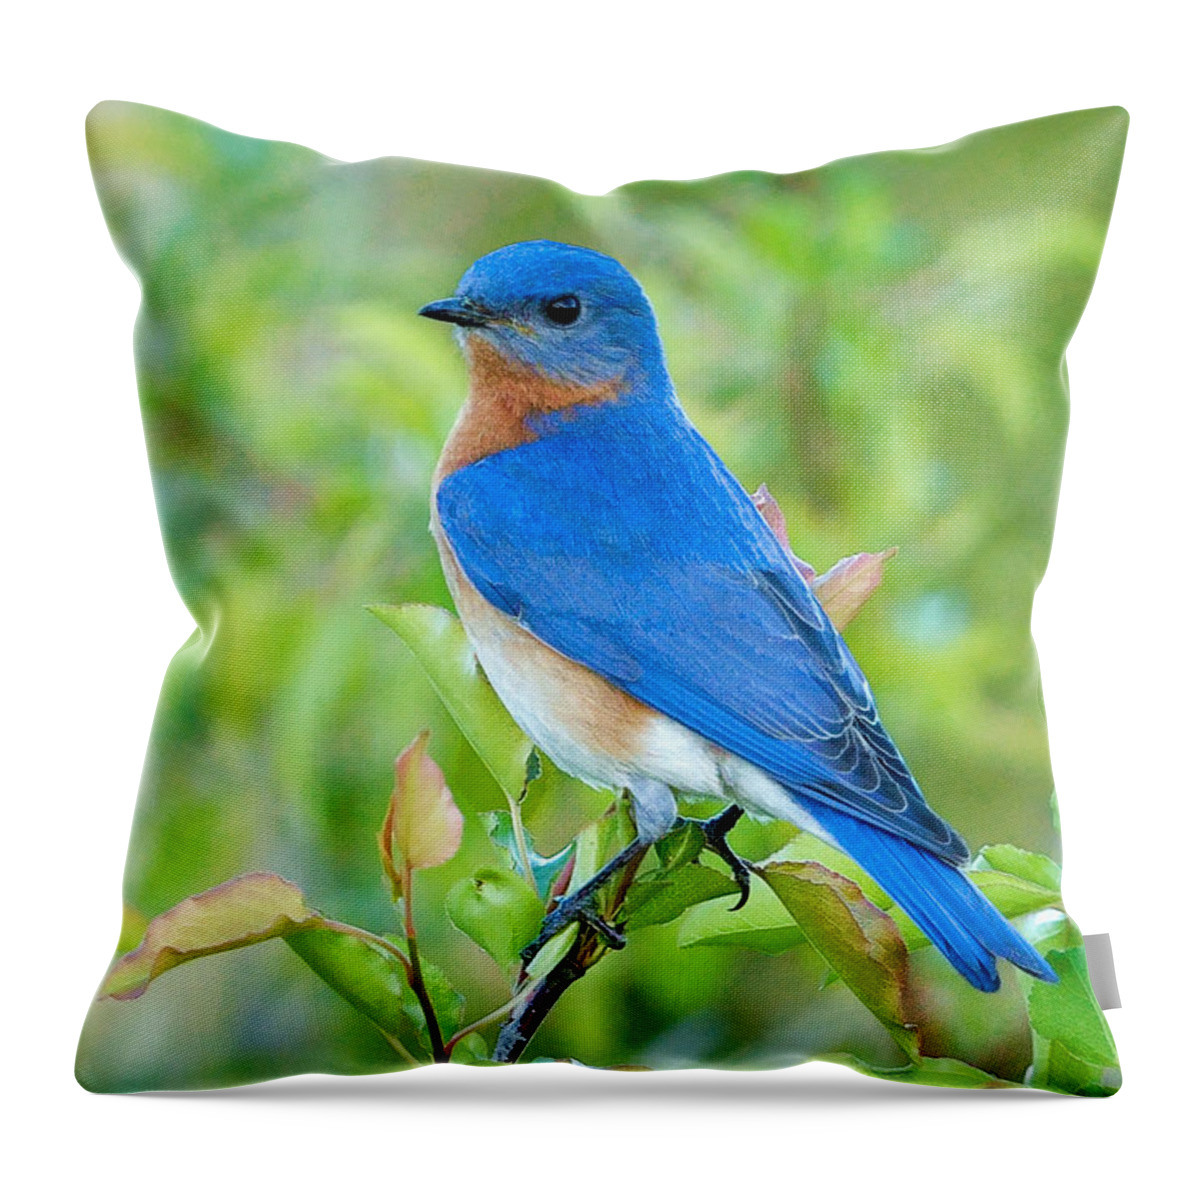 Bluebird Throw Pillow featuring the photograph Bluebird Joy by William Jobes